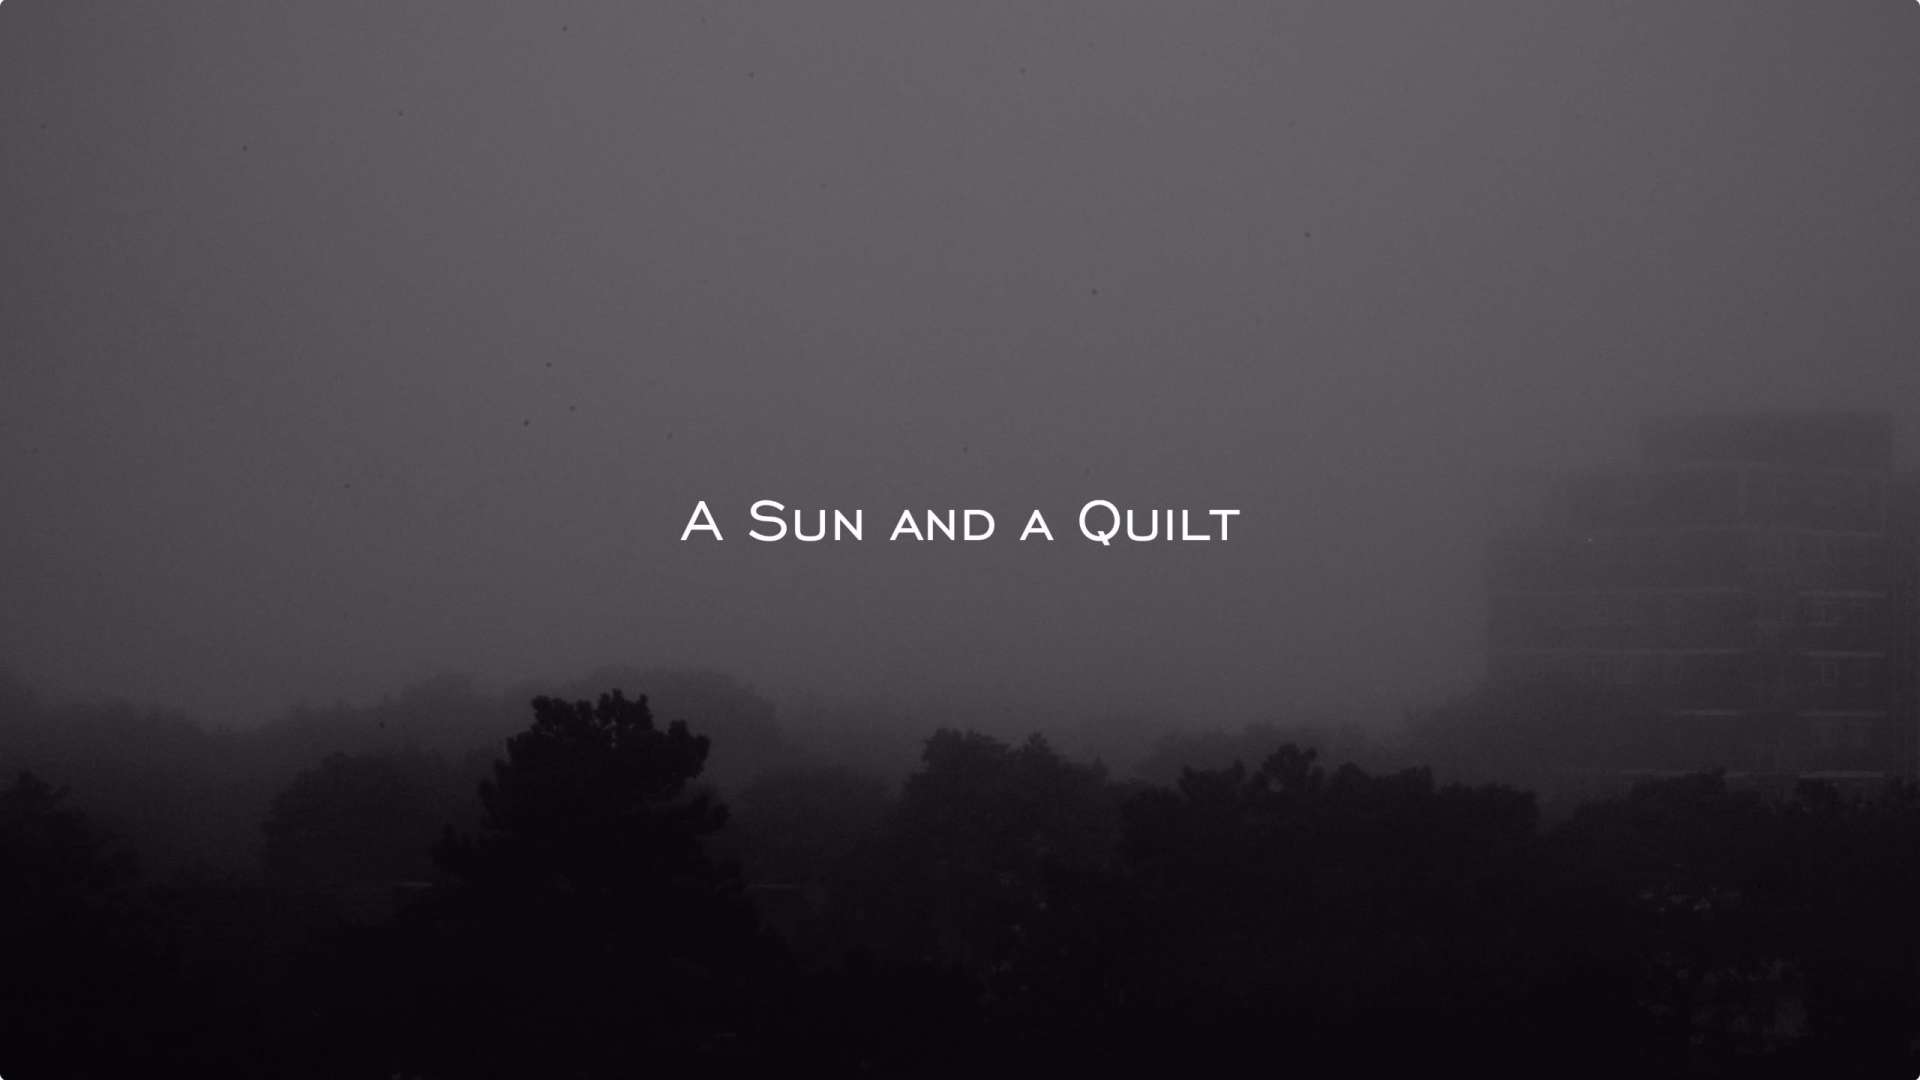 情绪表达创意实验短片《A sun and a quilt》